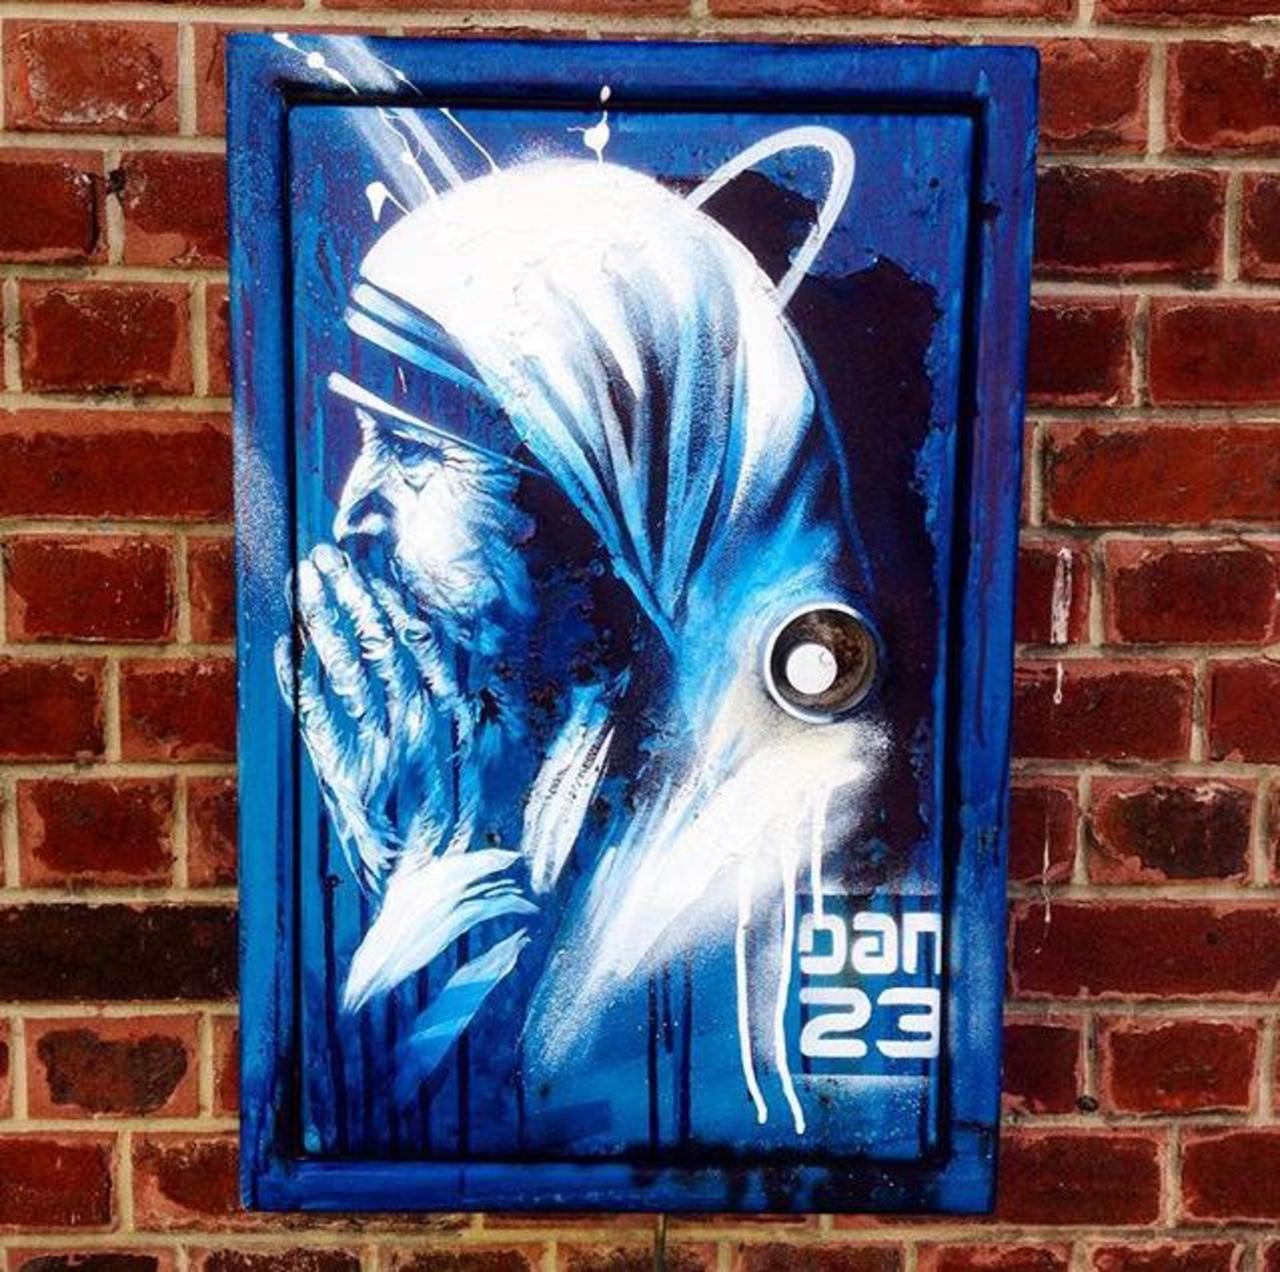 New Street Art 'Détail Spirit' by Dan23 

#art #graffiti #mural #streetart http://t.co/InFqAGW7FA